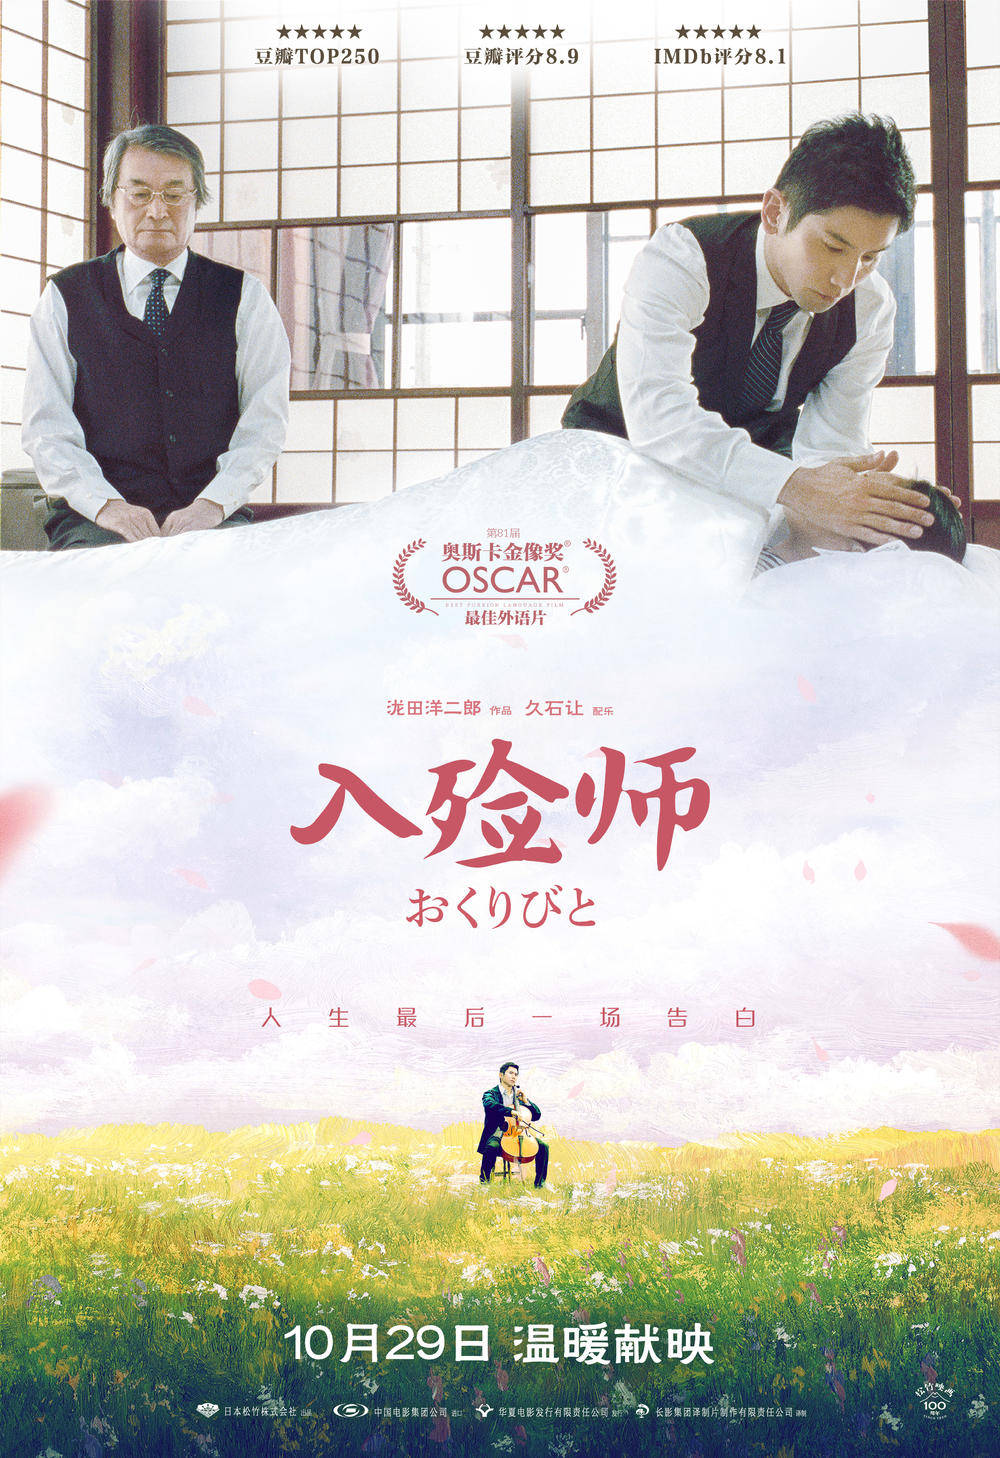 中国最新票房排行榜_中国电影周末票房排行榜至11月2日,《长津湖》1.22亿结束4连冠